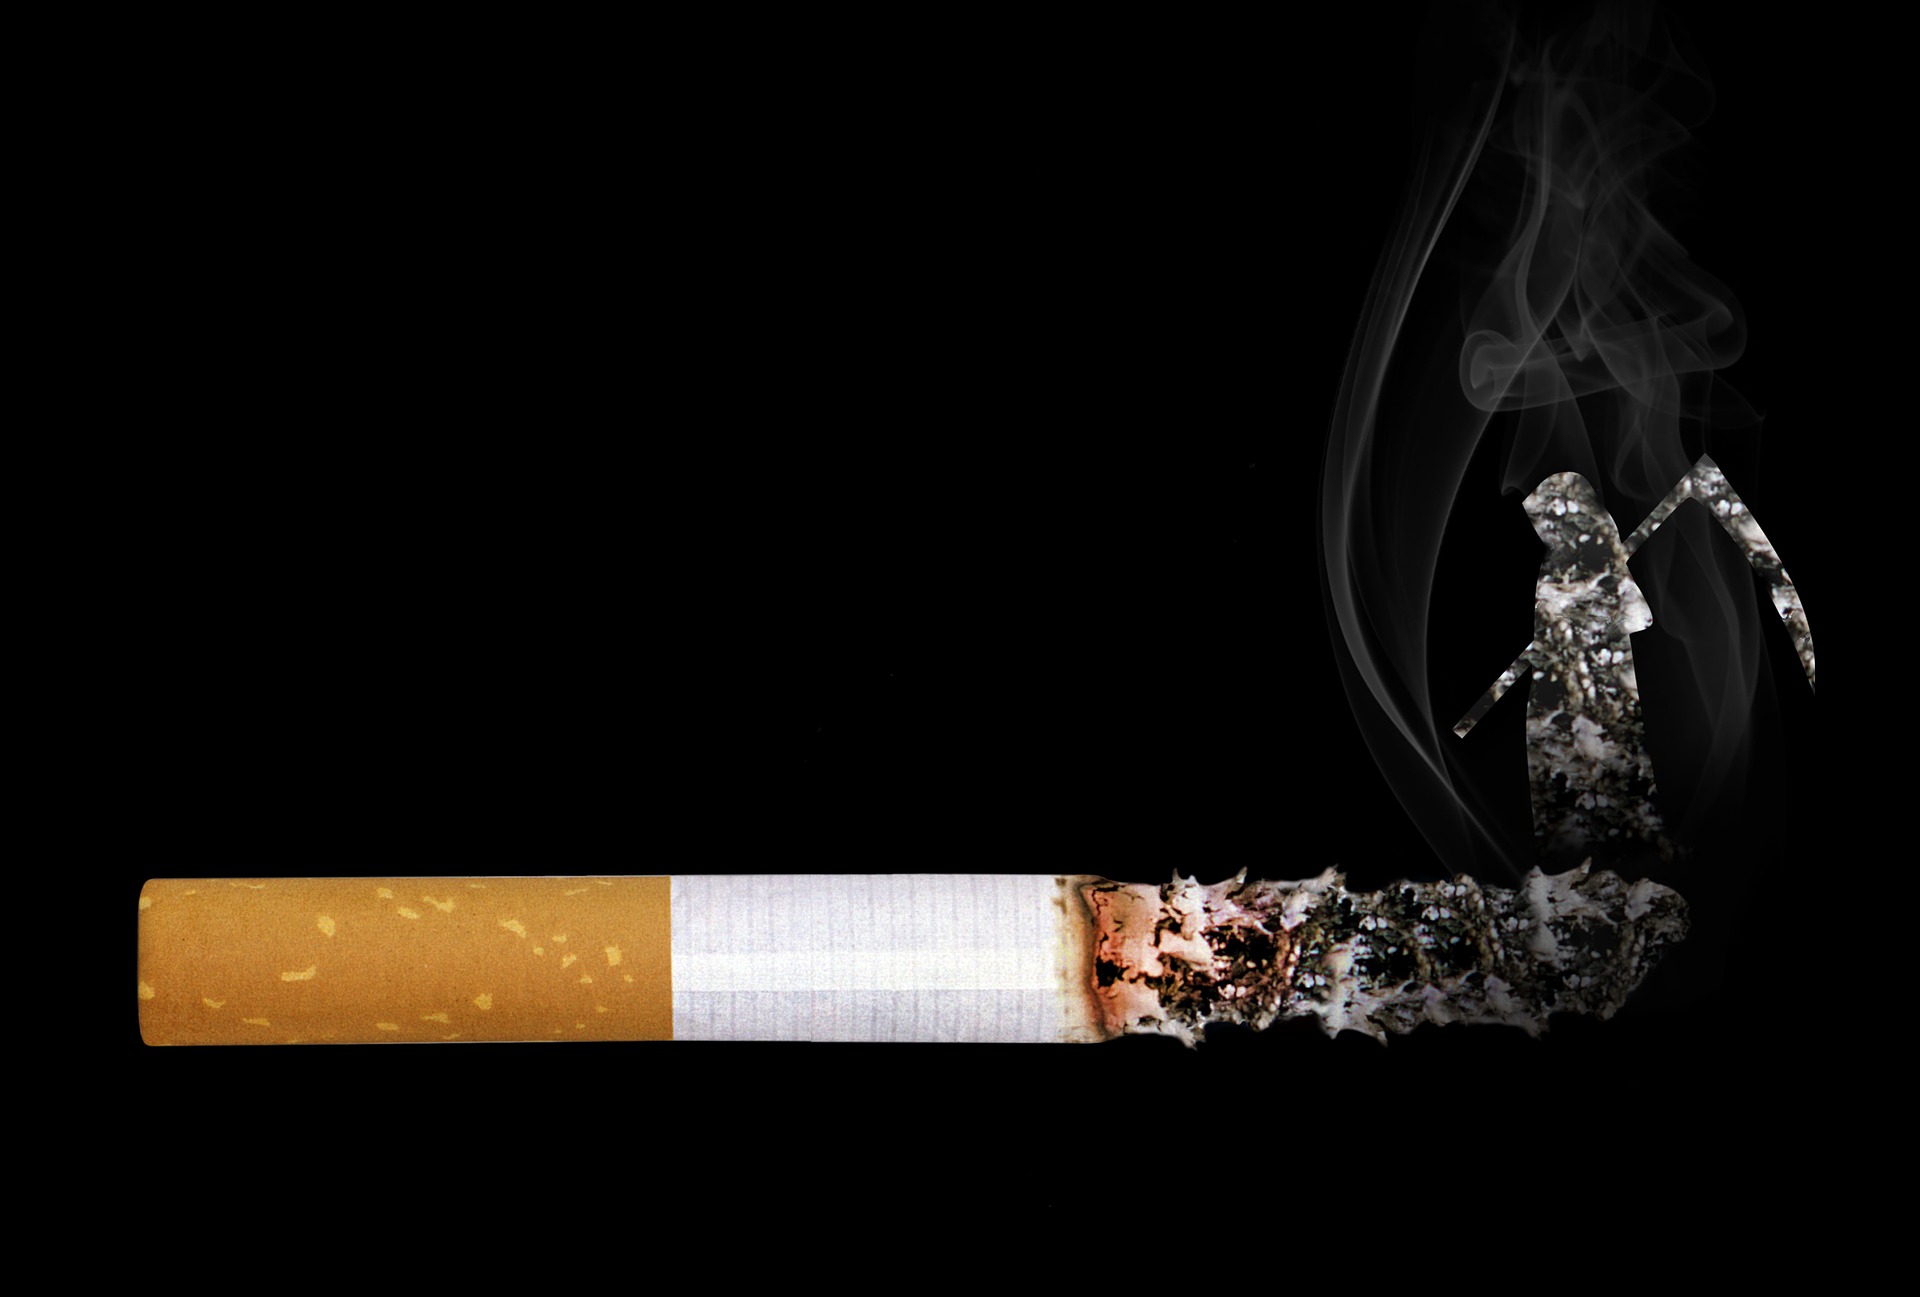 即使是低强度吸烟，也增加死亡风险！